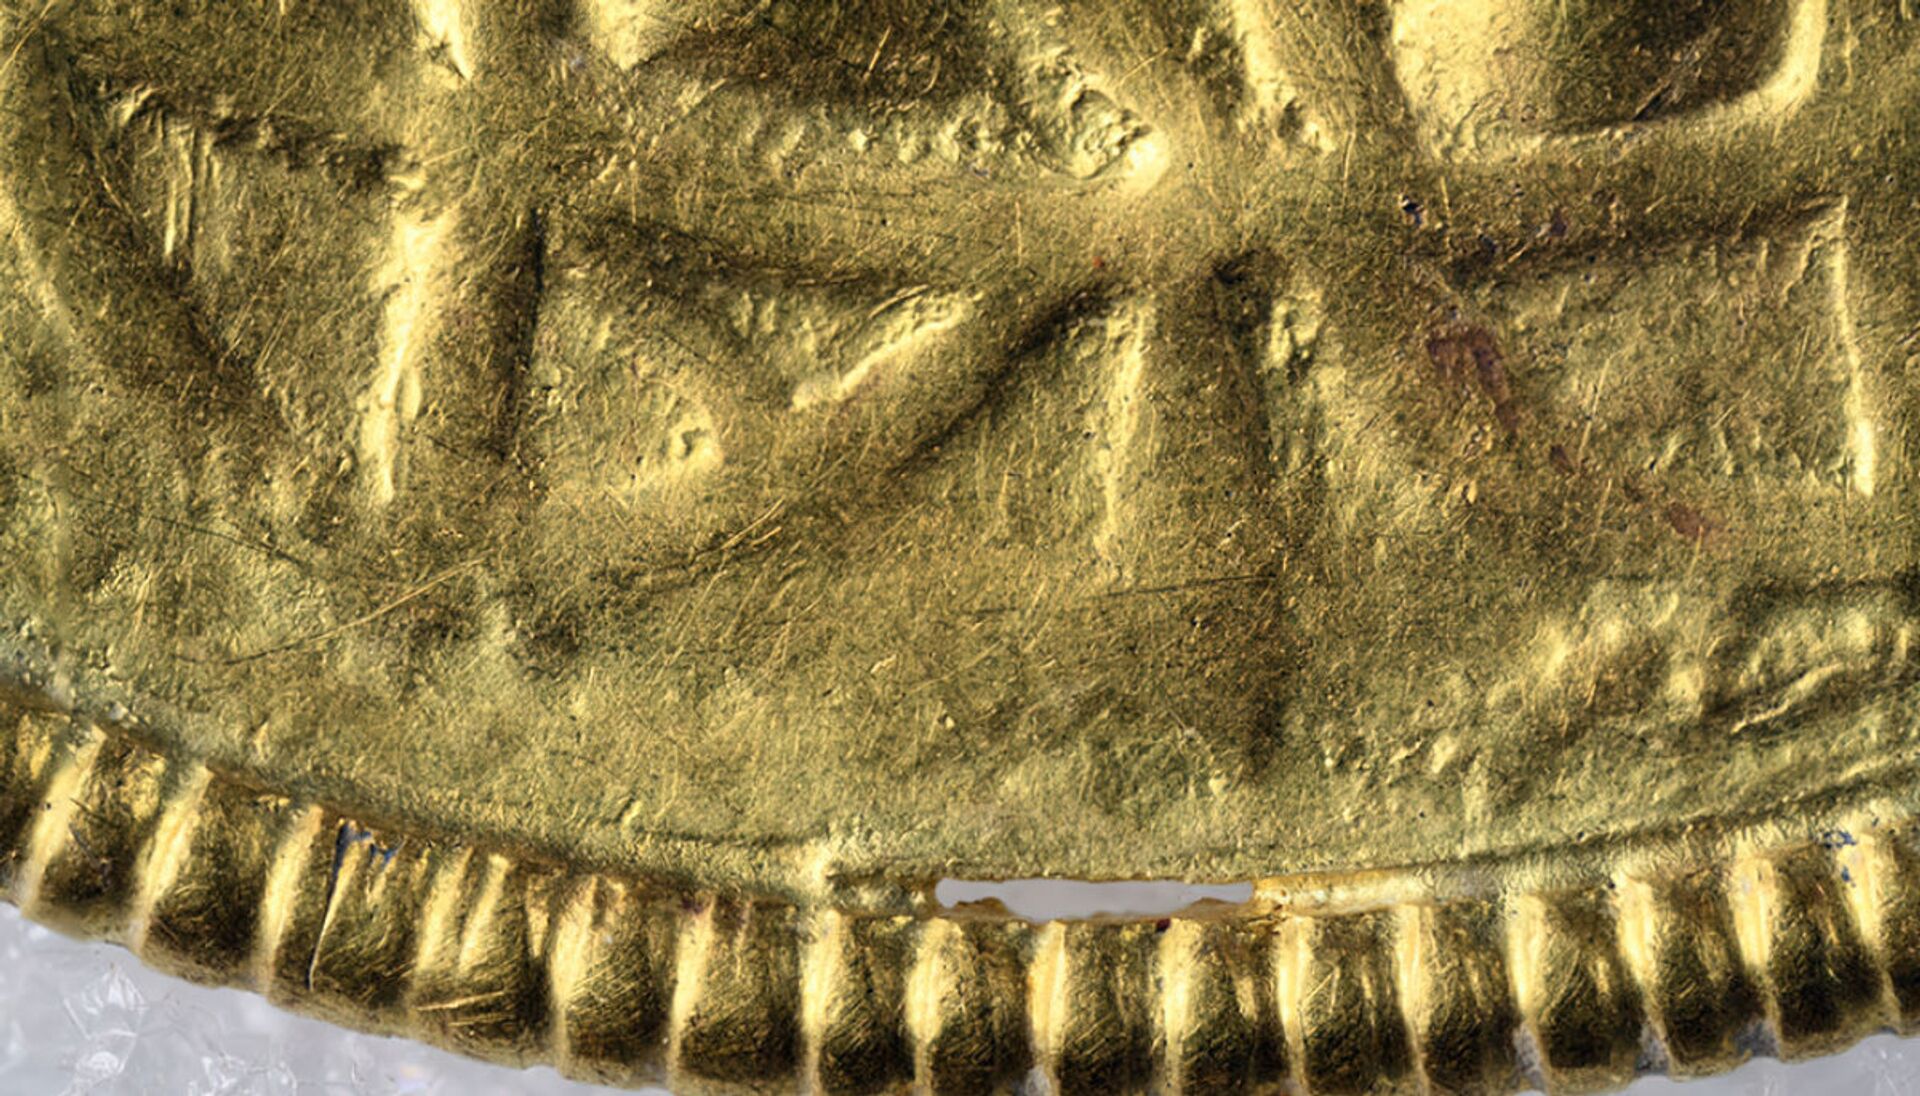 Raridade nórdica: pingentes de ouro de cerca de 1.500 anos são achados na Noruega (FOTOS) - Sputnik Brasil, 1920, 06.05.2021